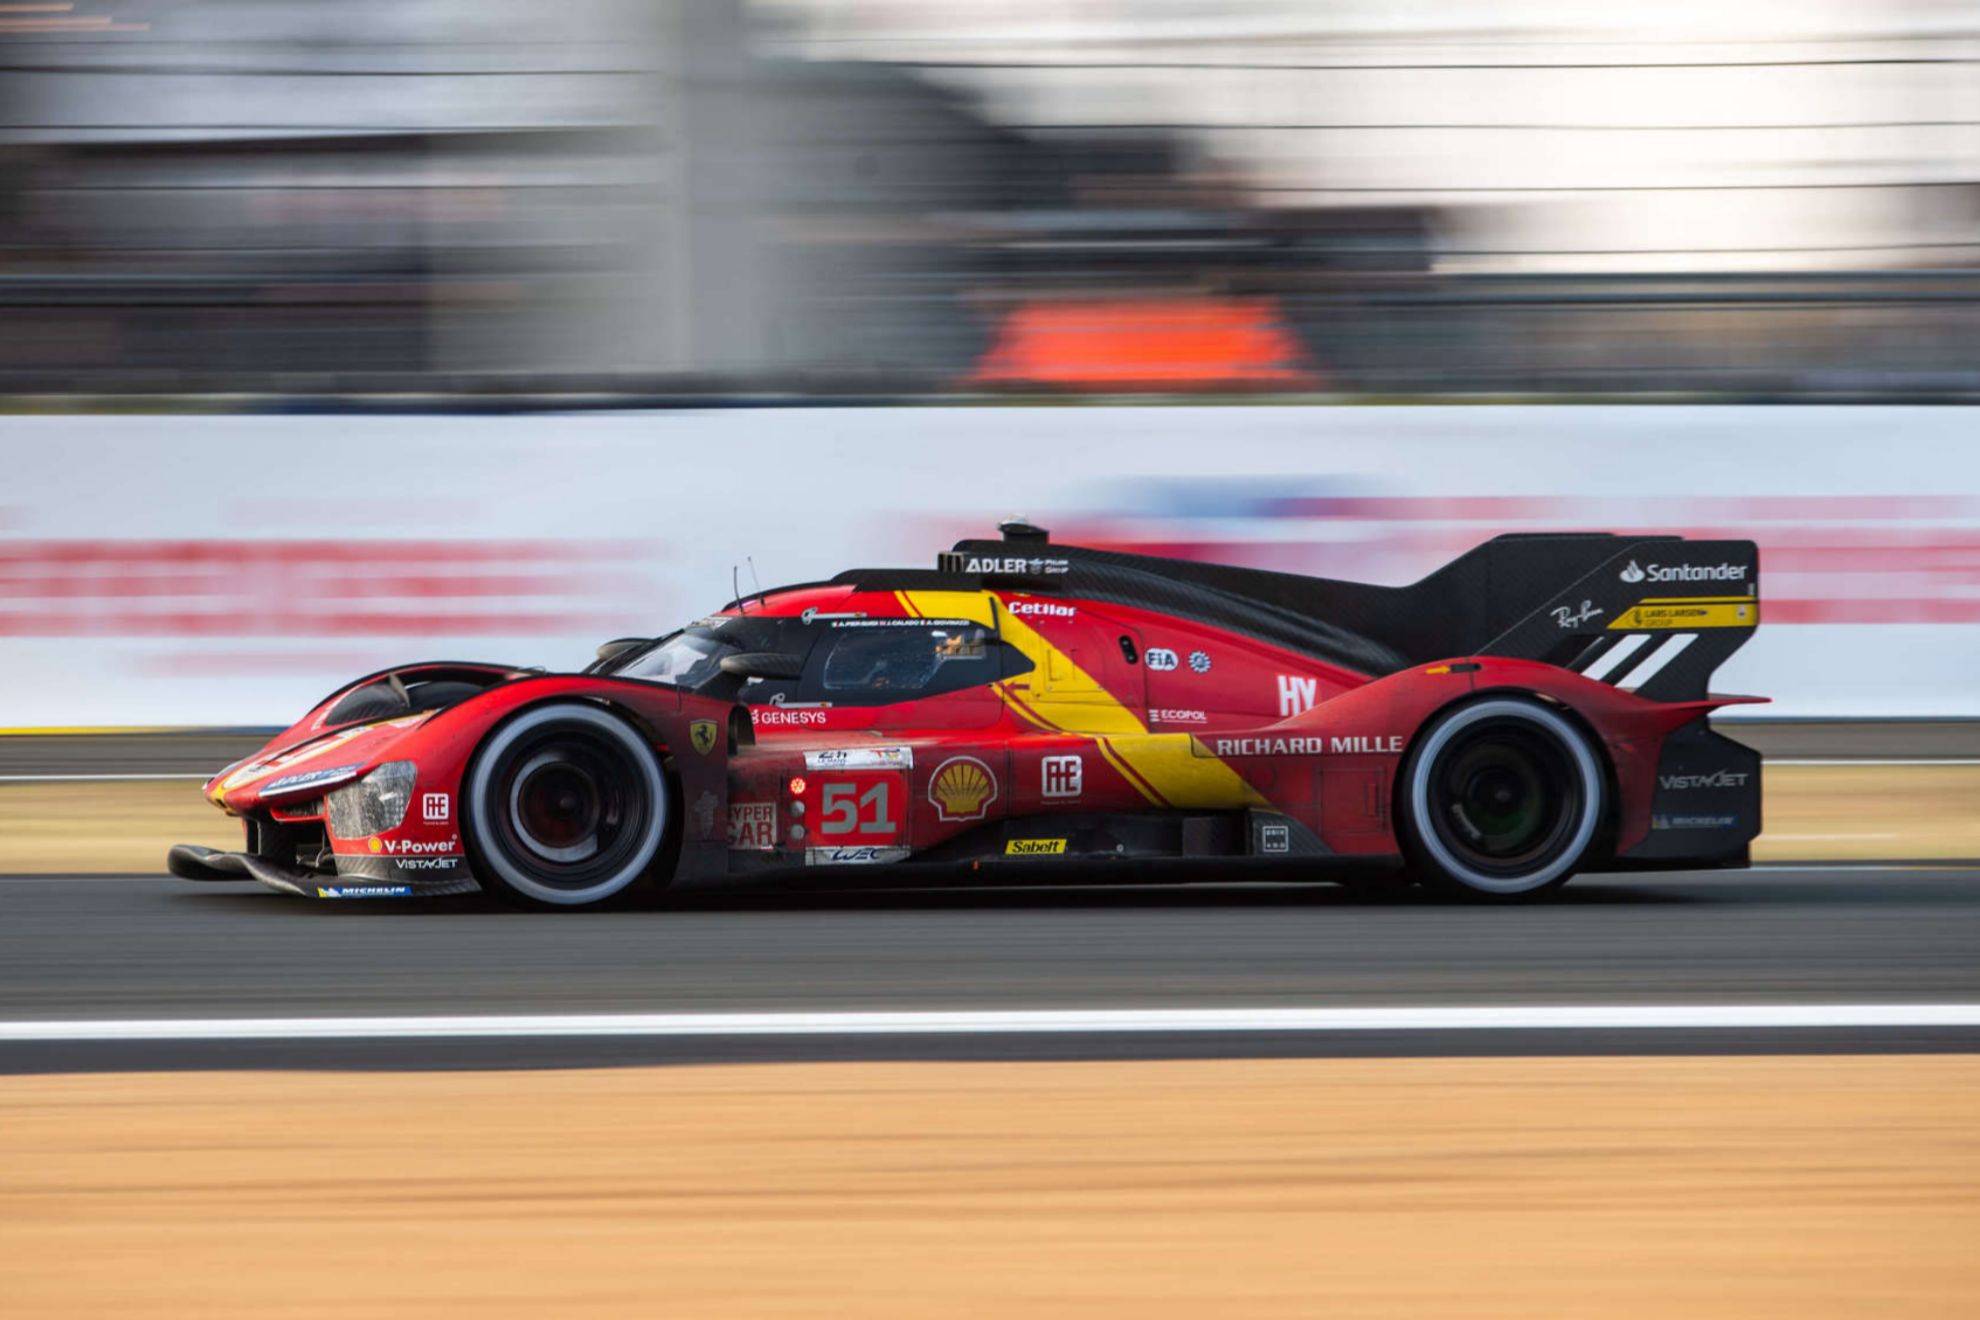 Ferrari tendr que lidiar con ms peso y menos potencia.